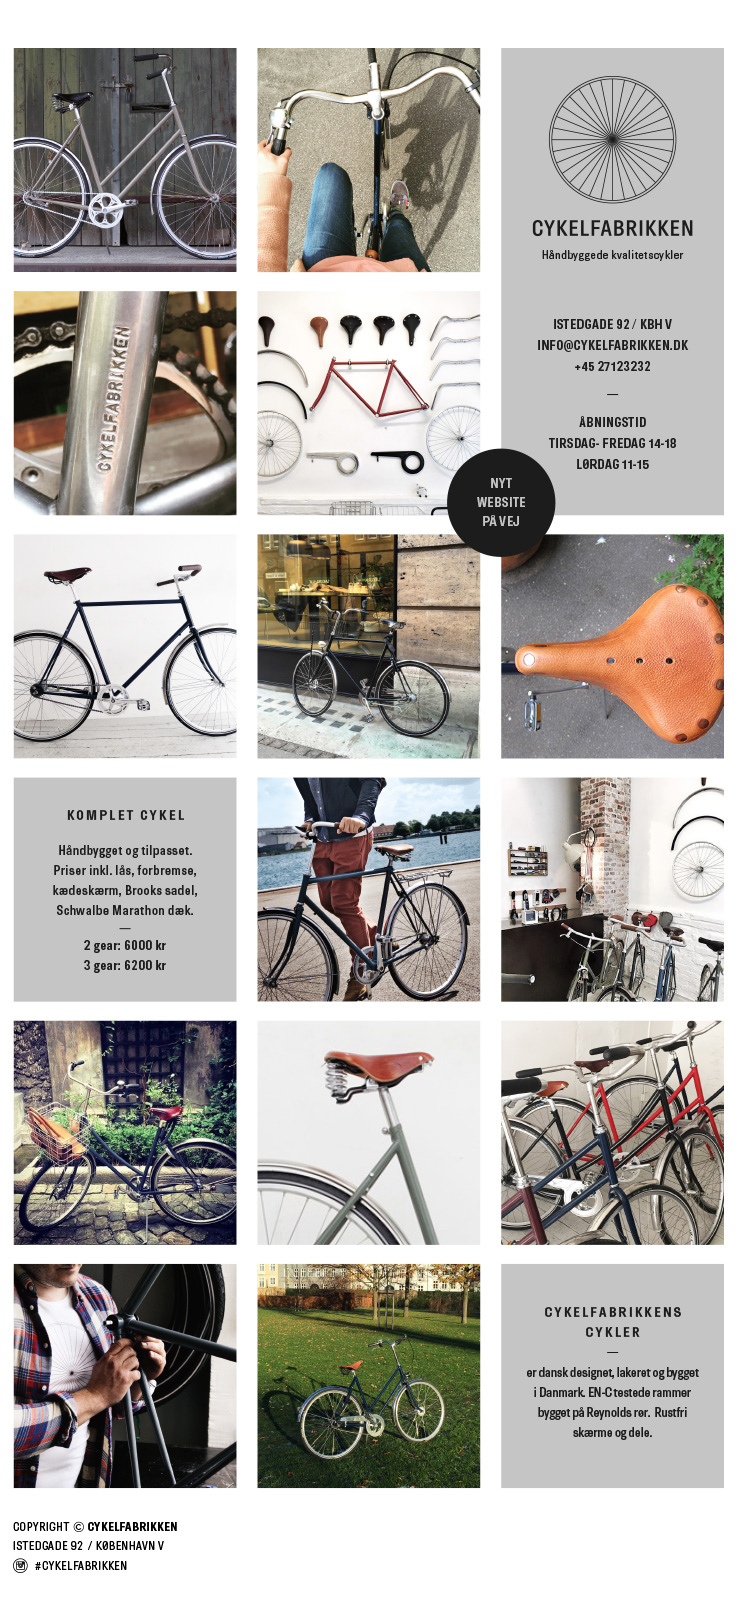 Cykelfabrikken - Nyt website på vej